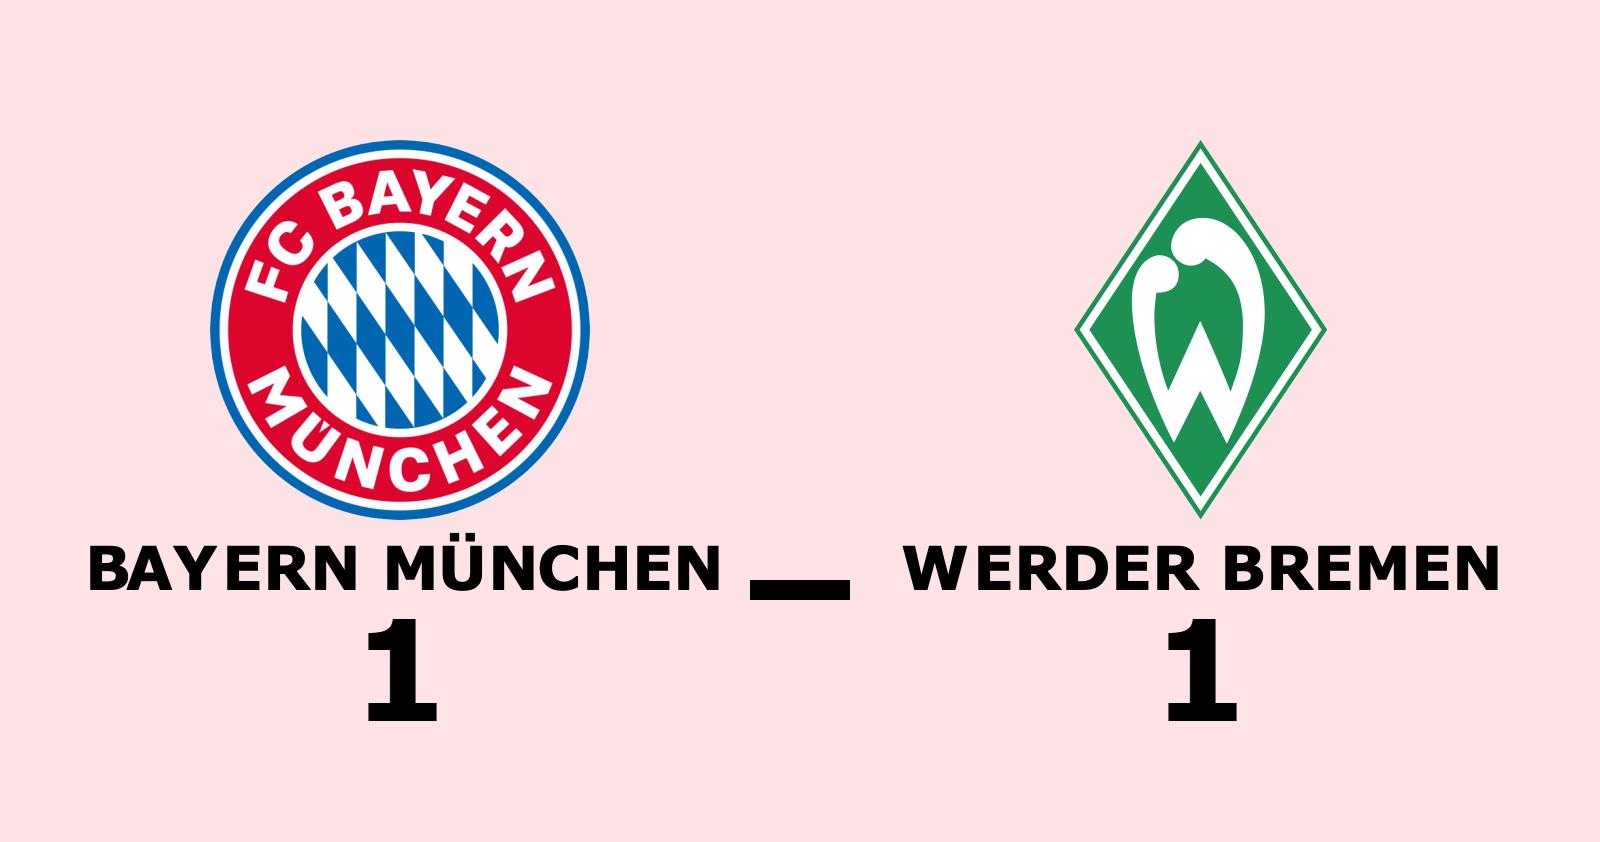 Vinstsviten slut för Bayern München